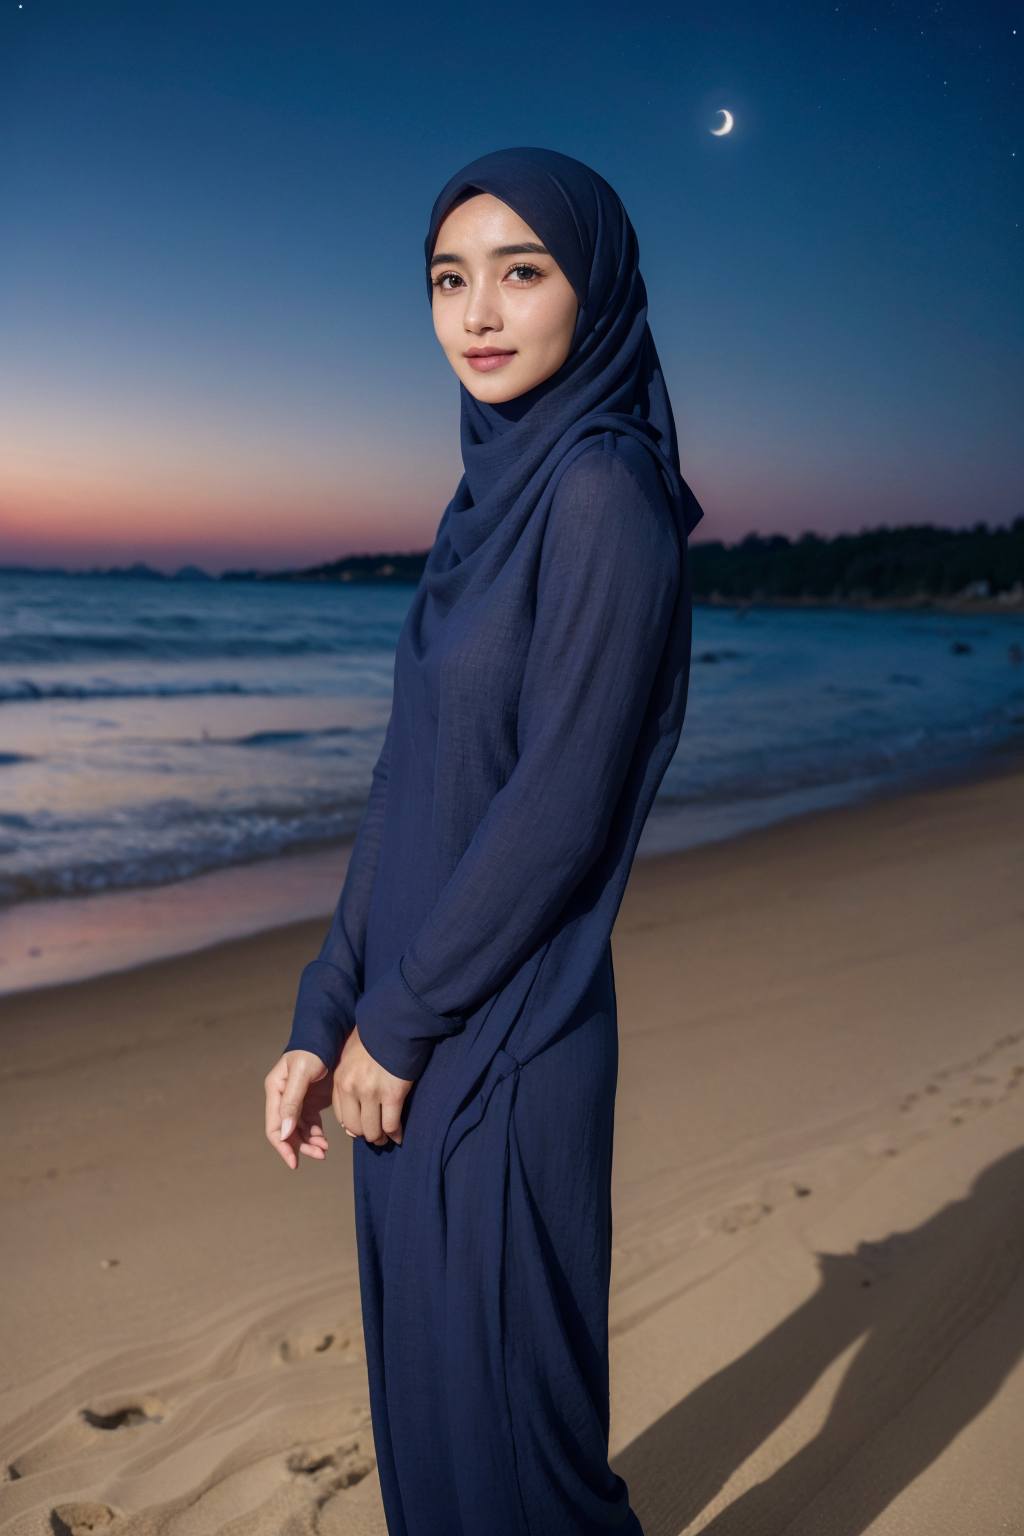 wanita hijab di pantai
√ Tutorial / Belajar bikin Ai
√ Gabung vip konten
√ Reque...